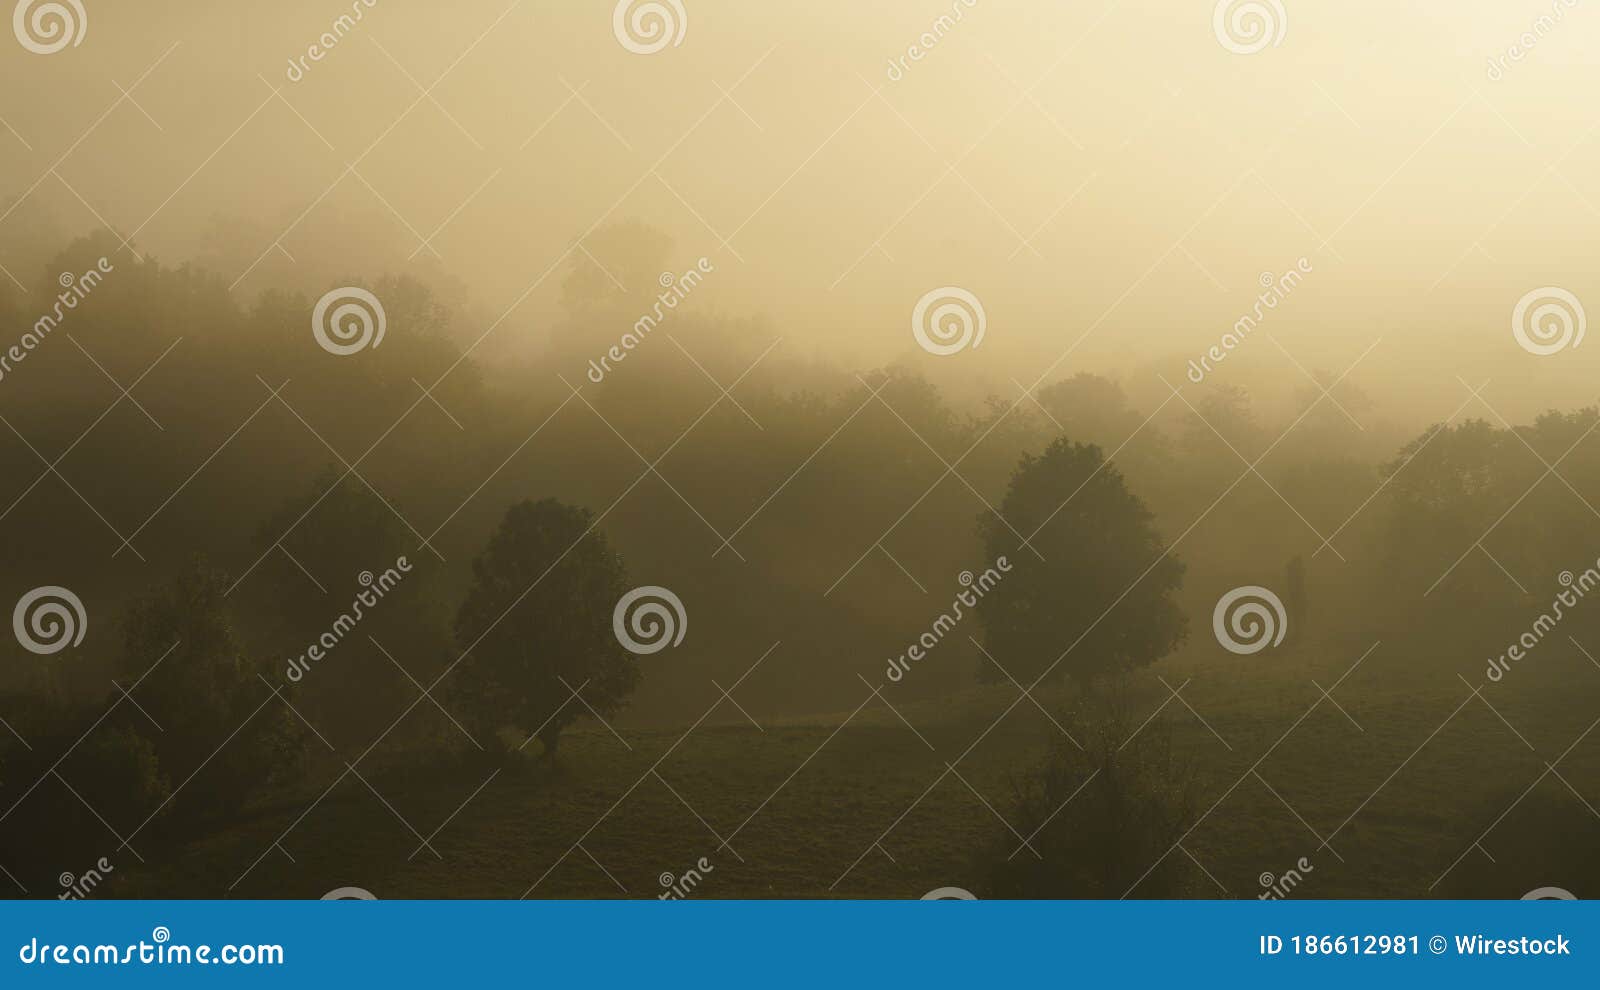 bonita foto de una zona rural al amanecer con la niebla entre los arboles